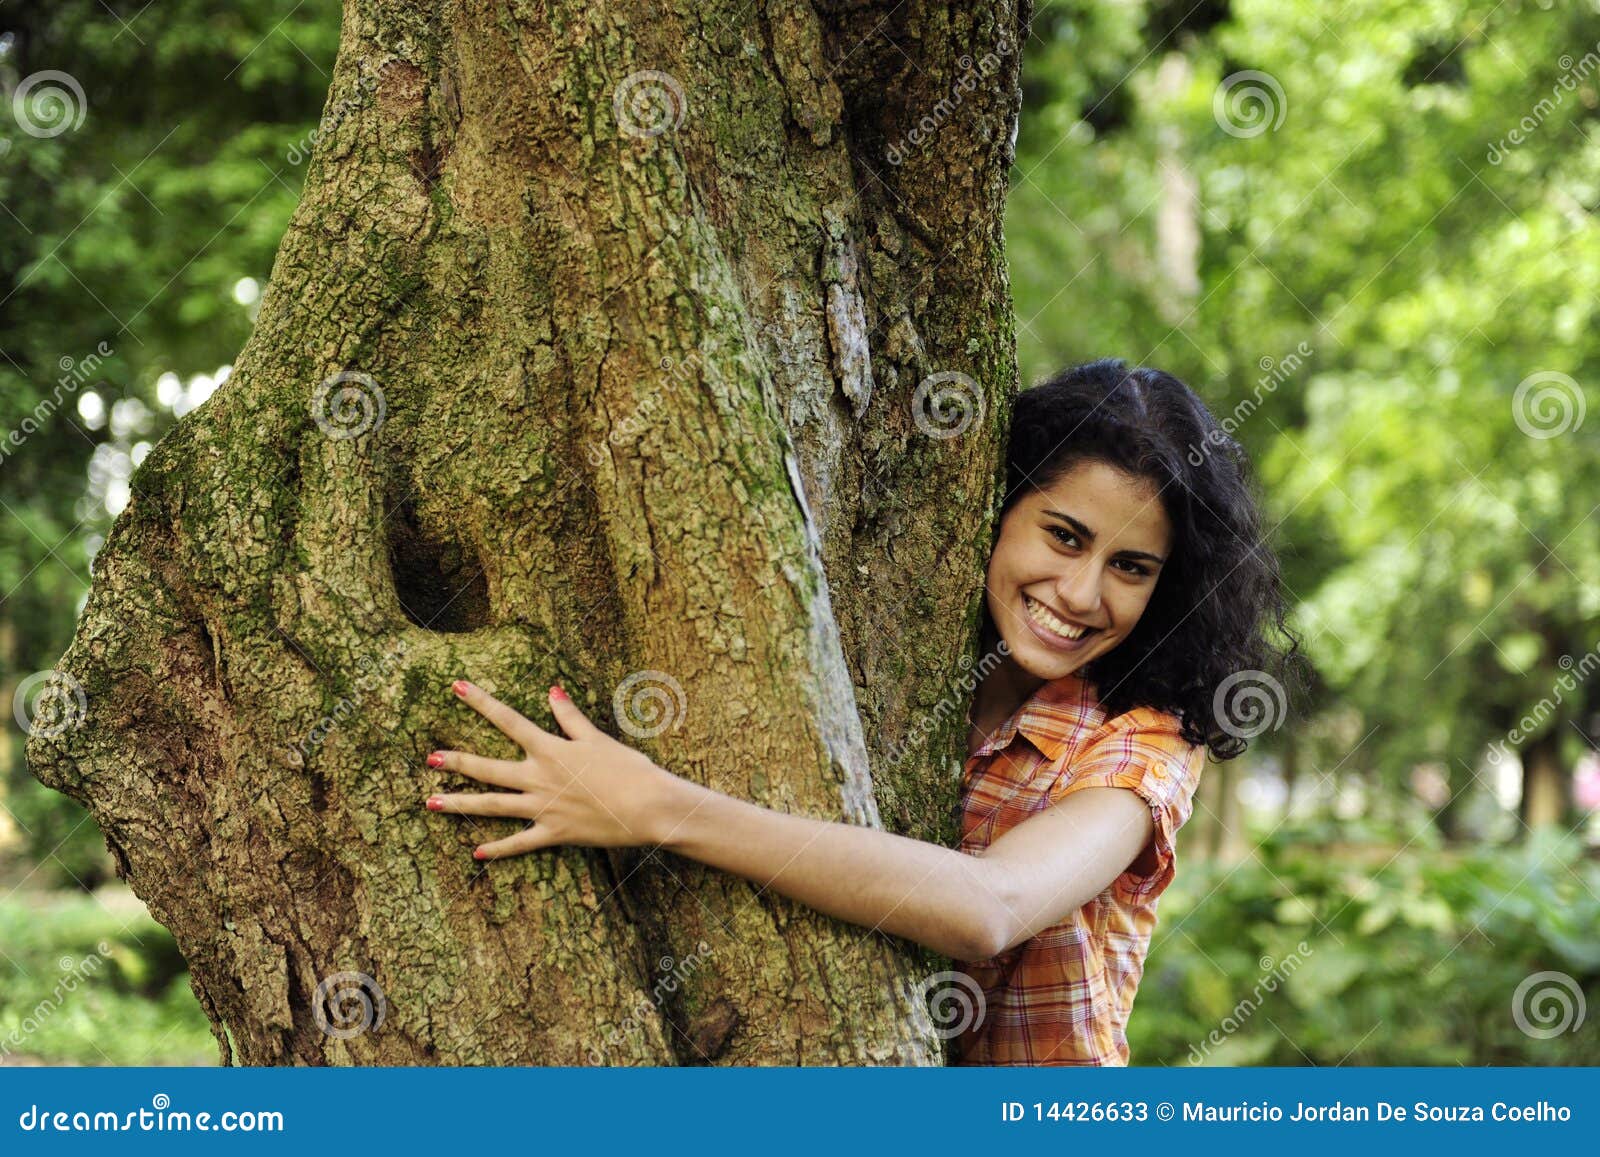 Mujer atada a un árbol | El Diario Ecuador